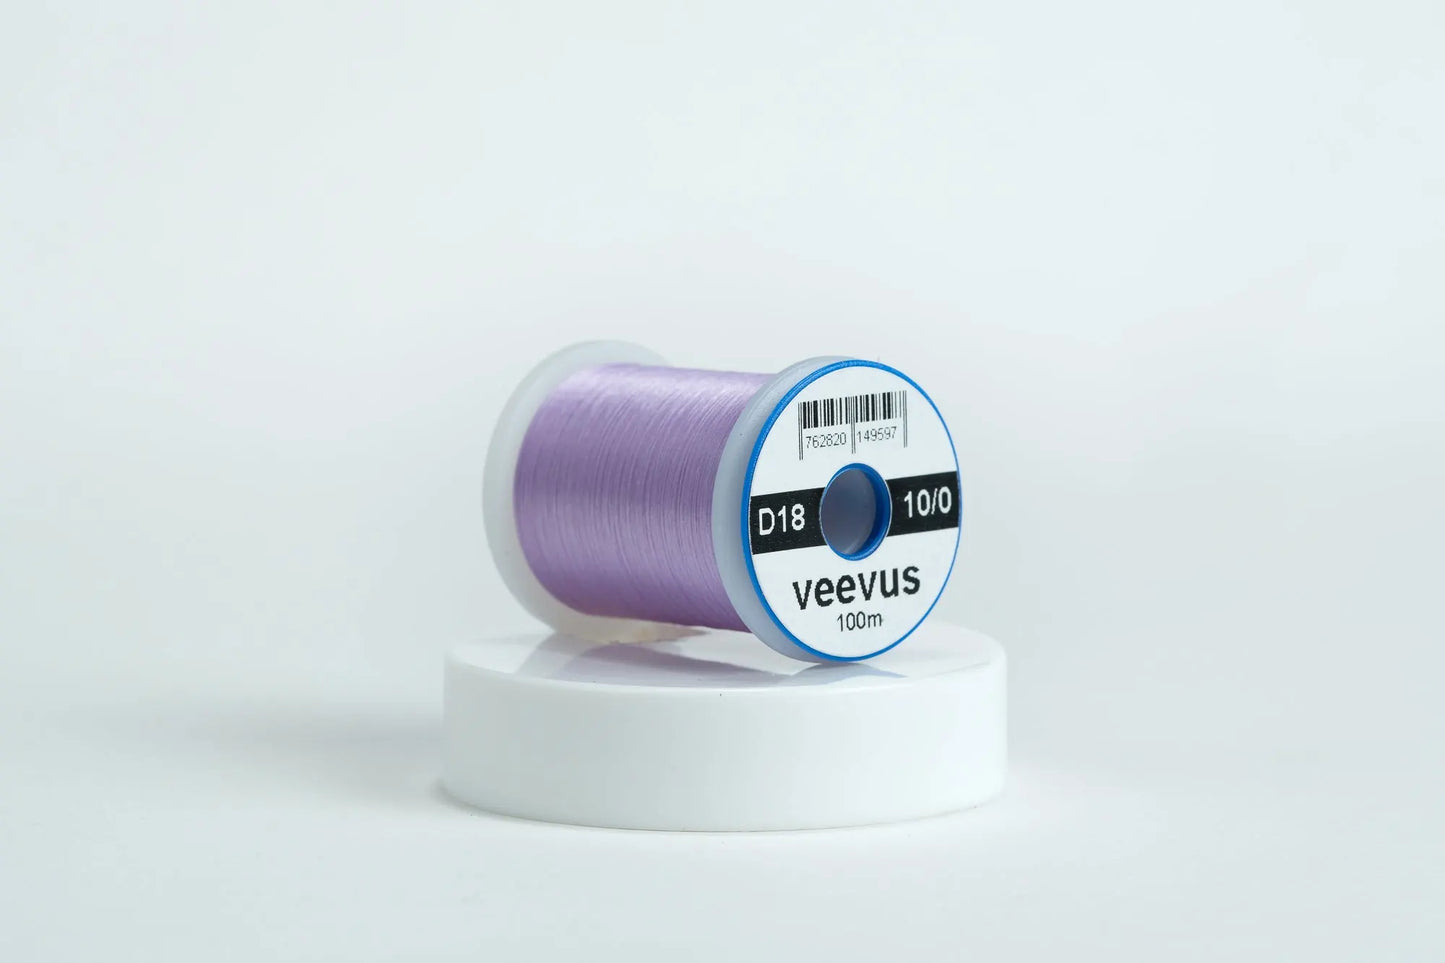 10/0 Veevus Thread